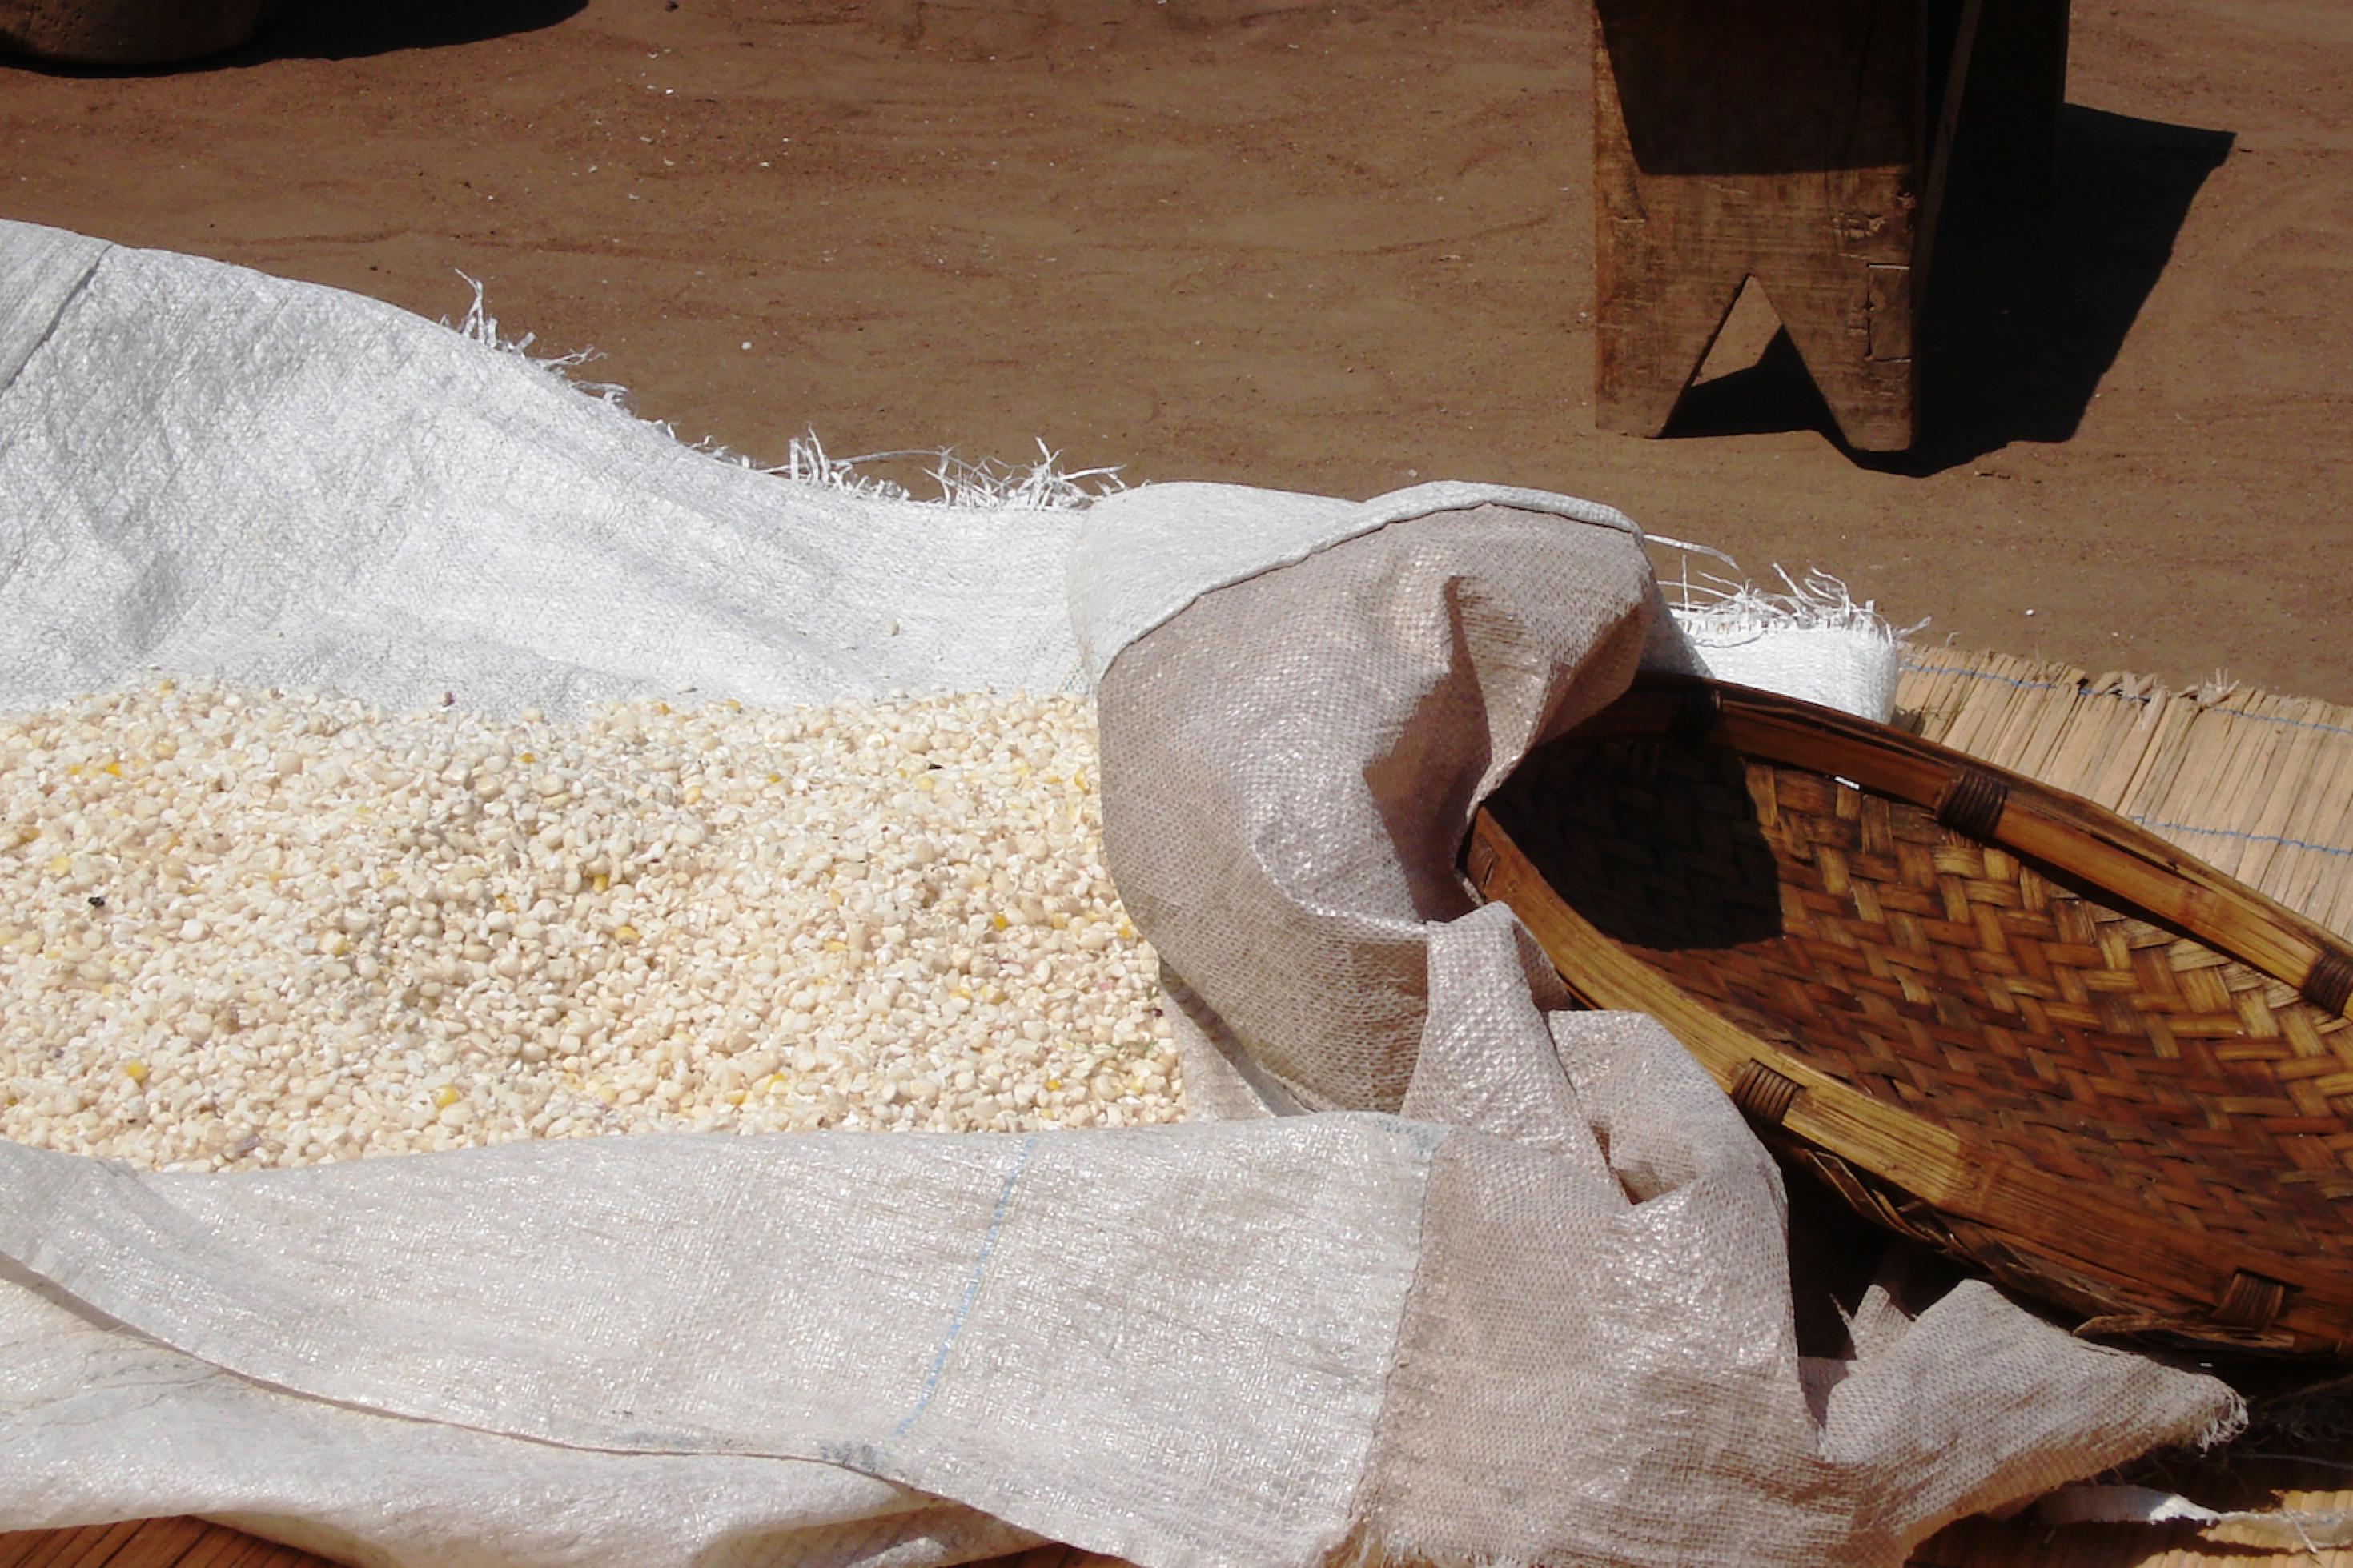 Eine aus Stroh geflochtene Schale liegt neben einem offenen Sack mit Mais auf einem rötlichen Lehmboden